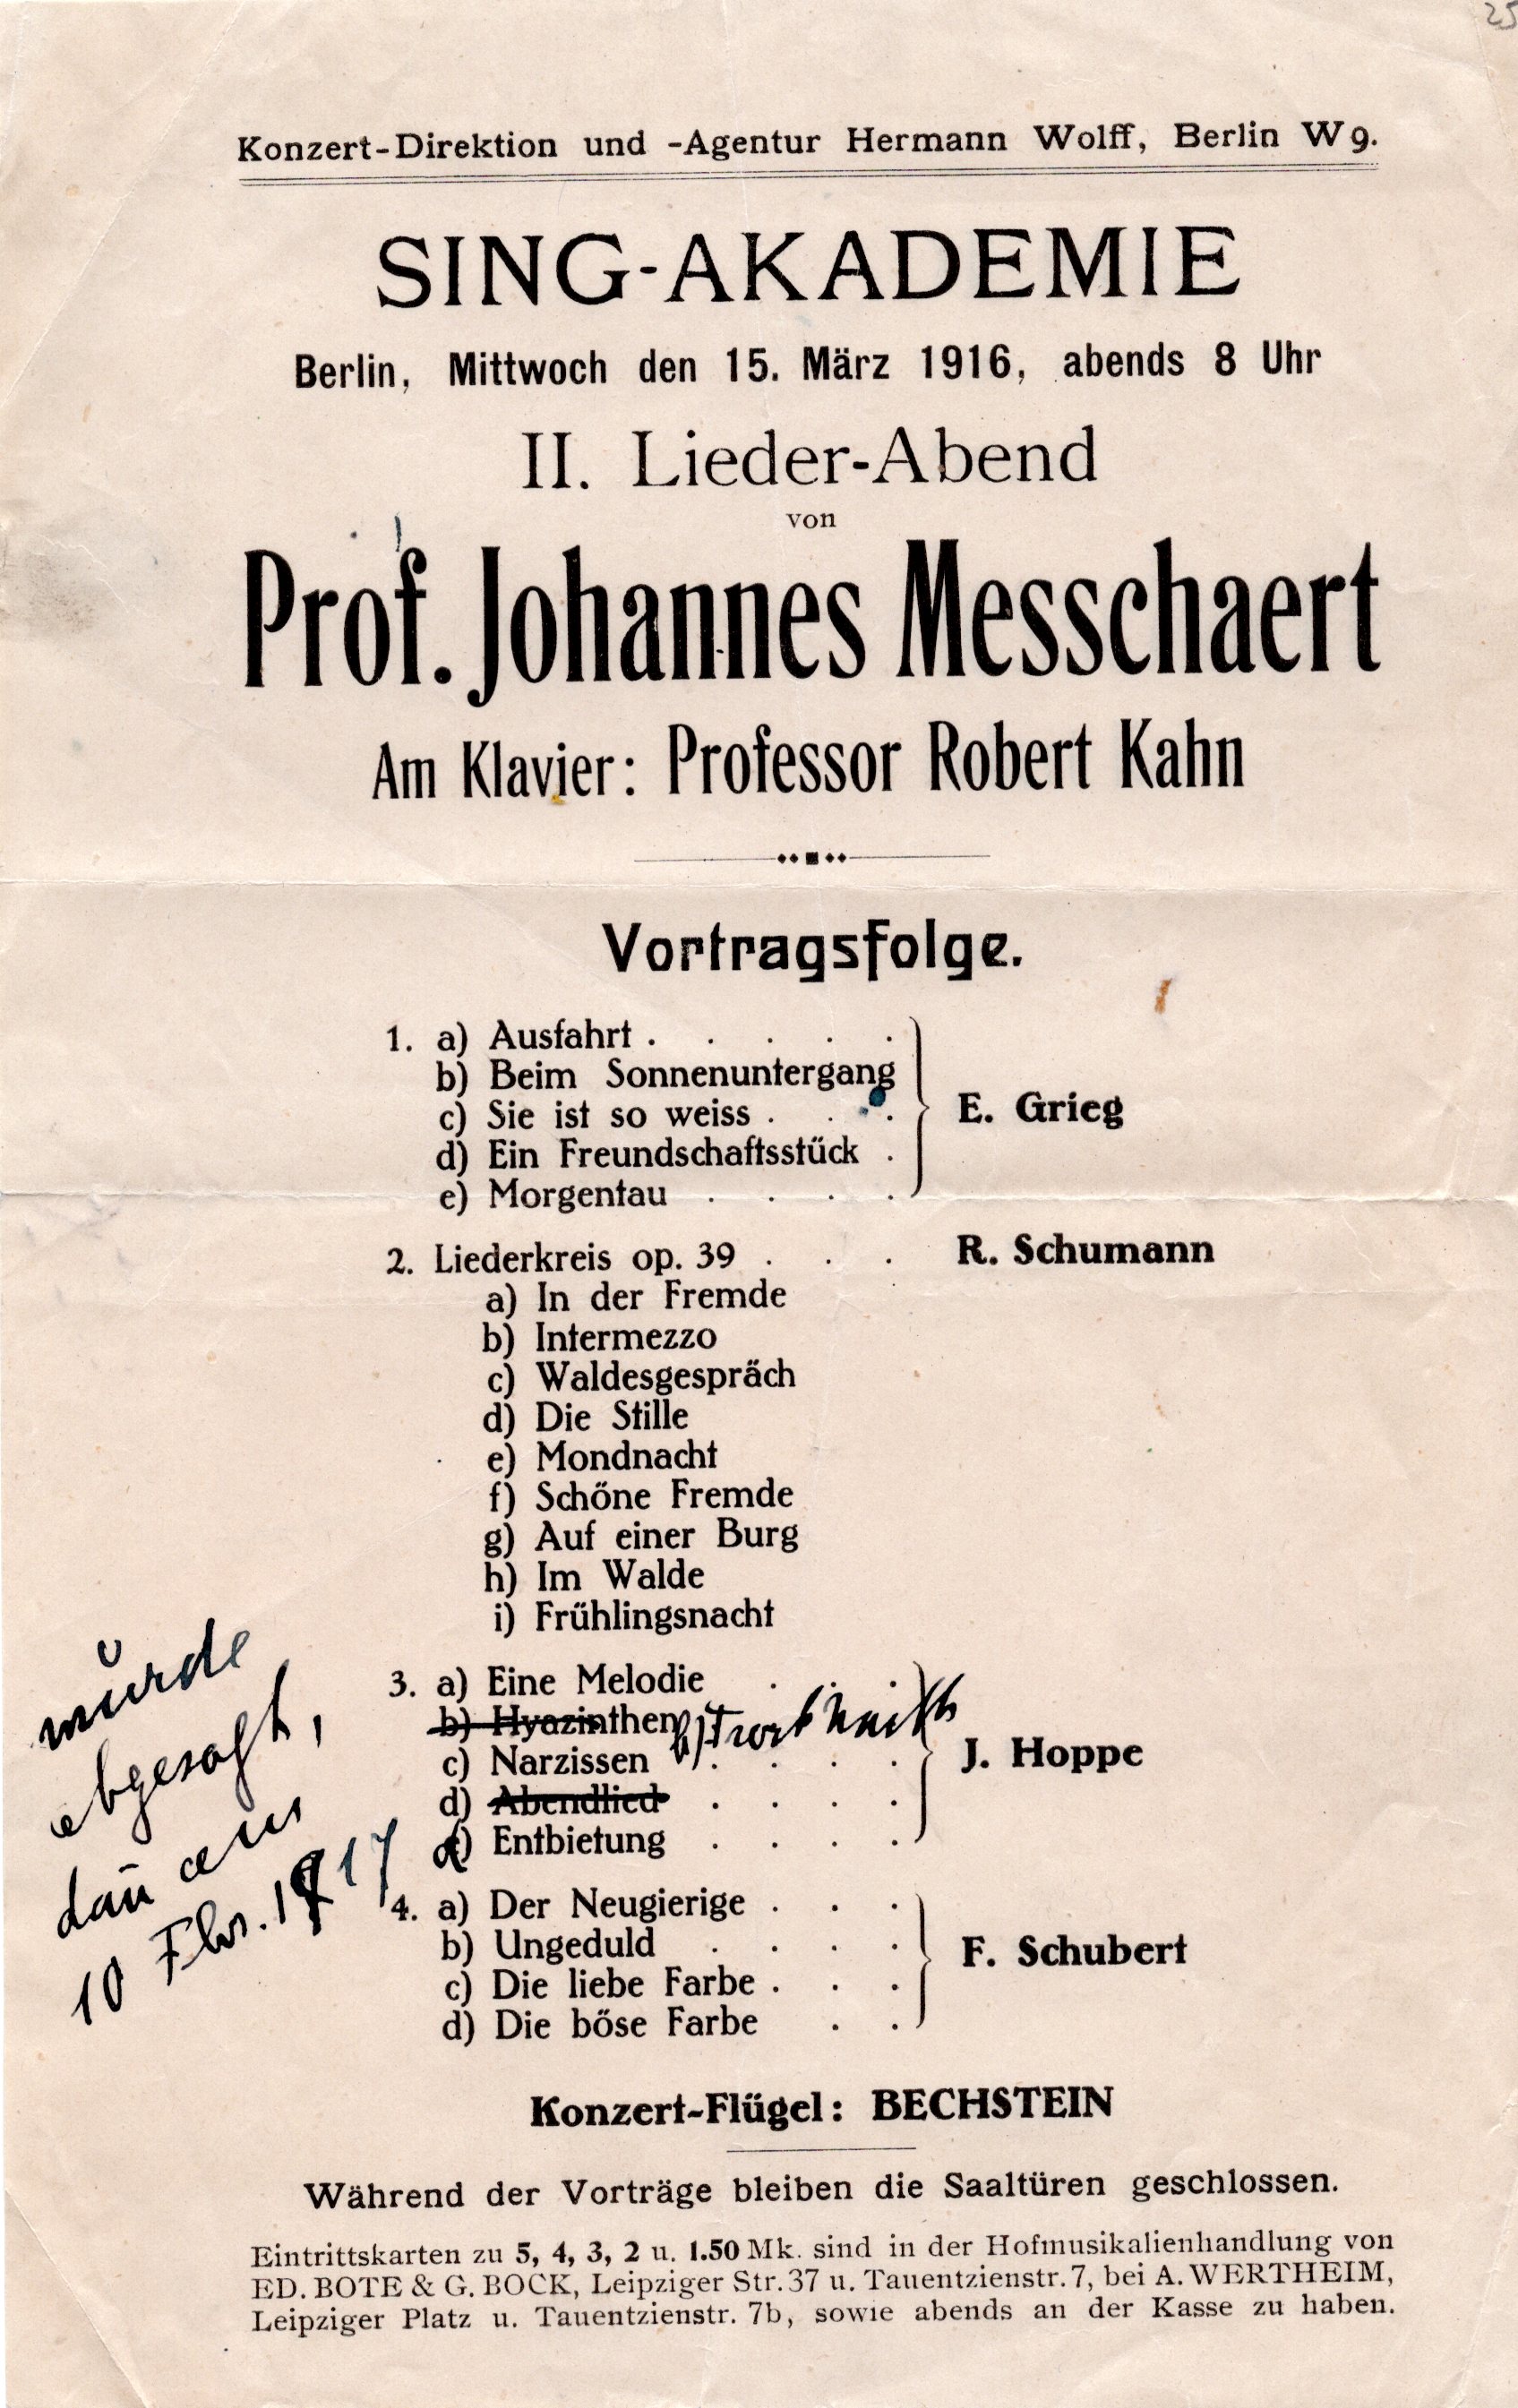 Programmblatt: Liederabend von Prof. Johannes Messchaert, Sing-Akademie Berlin (15.3.1916) (Archiv des IGPP)